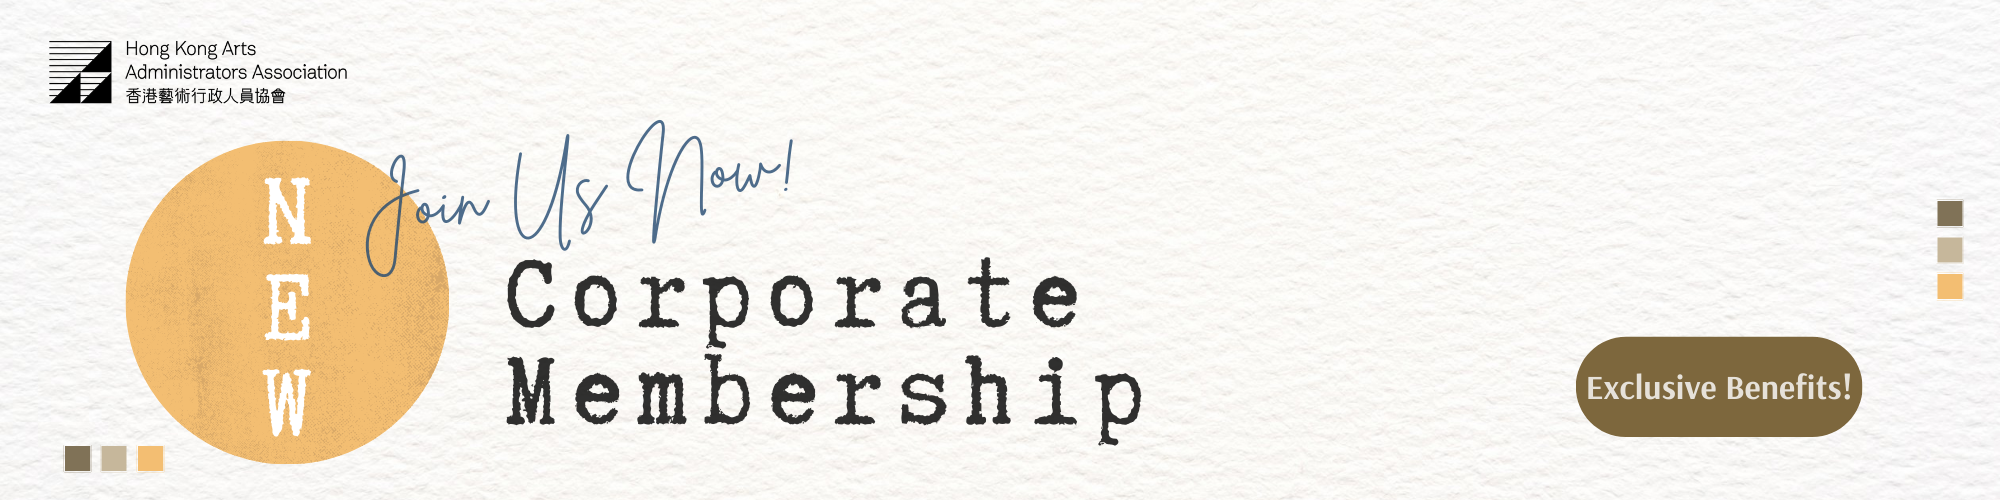 Corporate Membership Banner